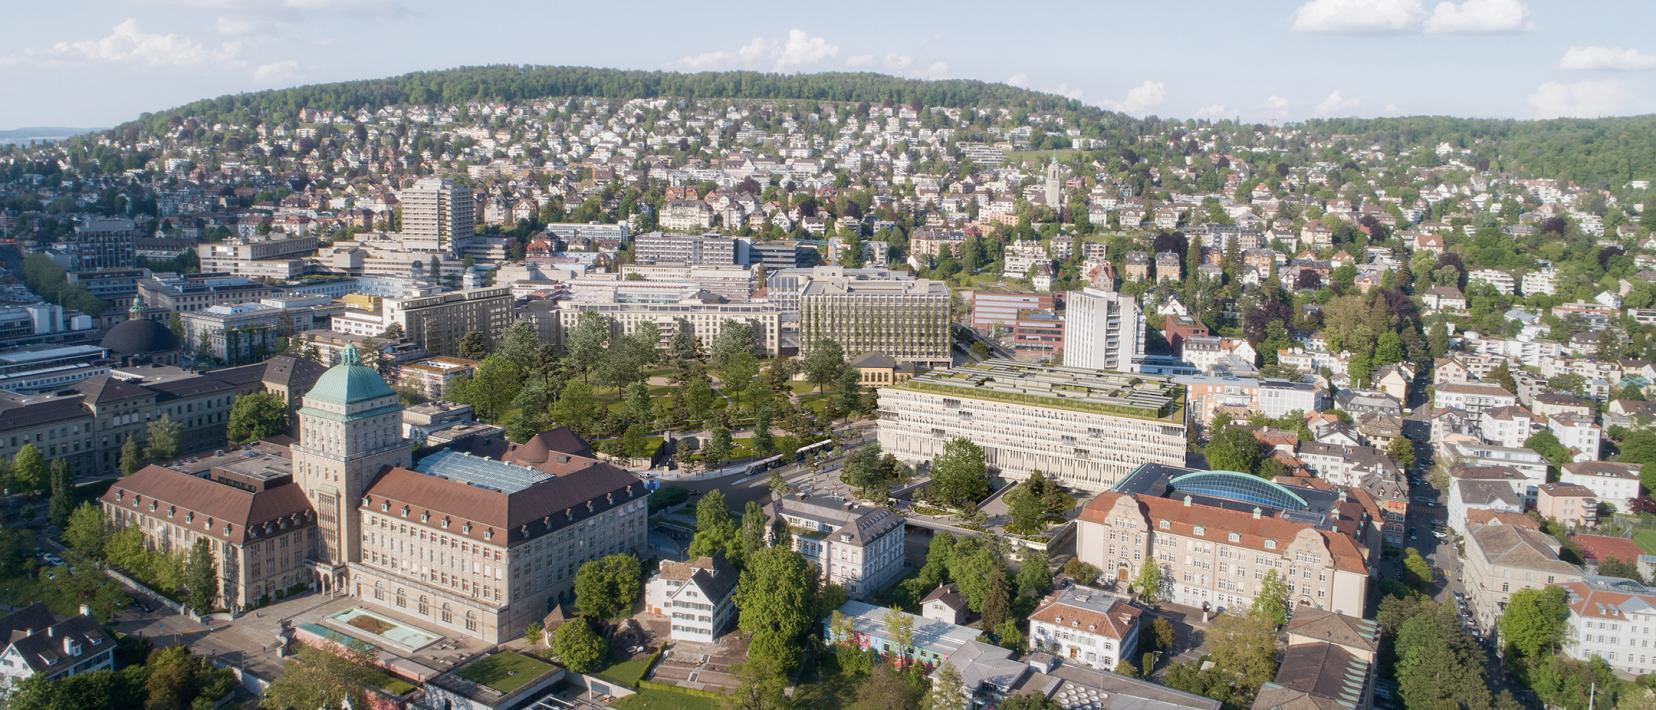 Blick von oben auf das künftige Hochschulgebiet Zürich Zentrum mit der Universität, der ETH und dem Universitätsspital Zürich sowie Grünflächen, im Hintergrund ist der Zürichberg zu sehen.